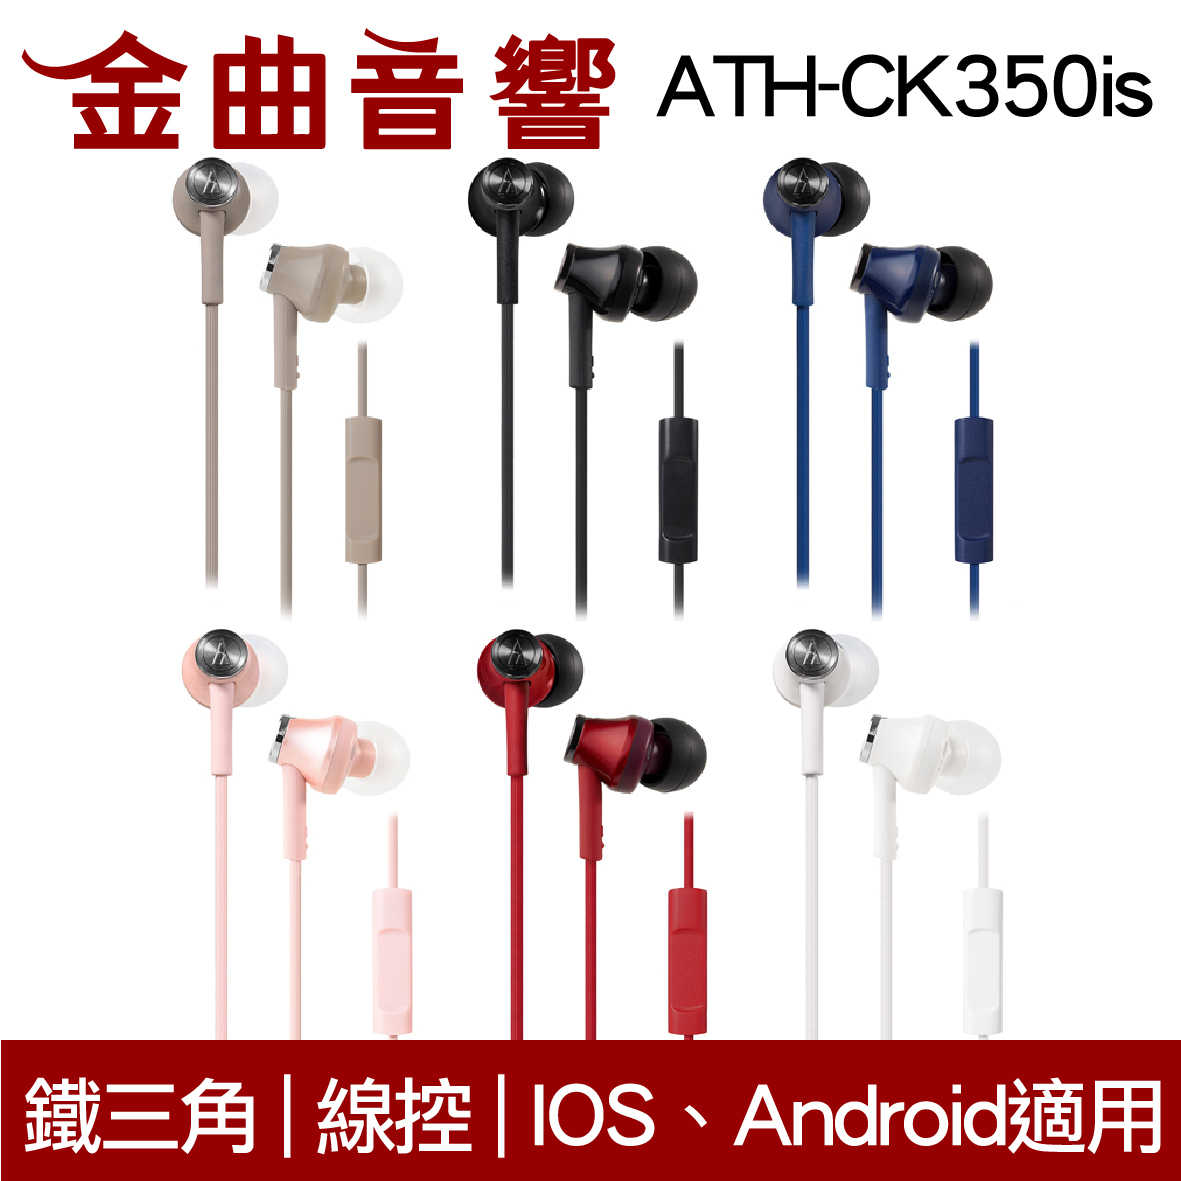 鐵三角 ATH-CK350iS 深藍色 線控耳道式耳機 IPhone IOS安卓 適用 | 金曲音響